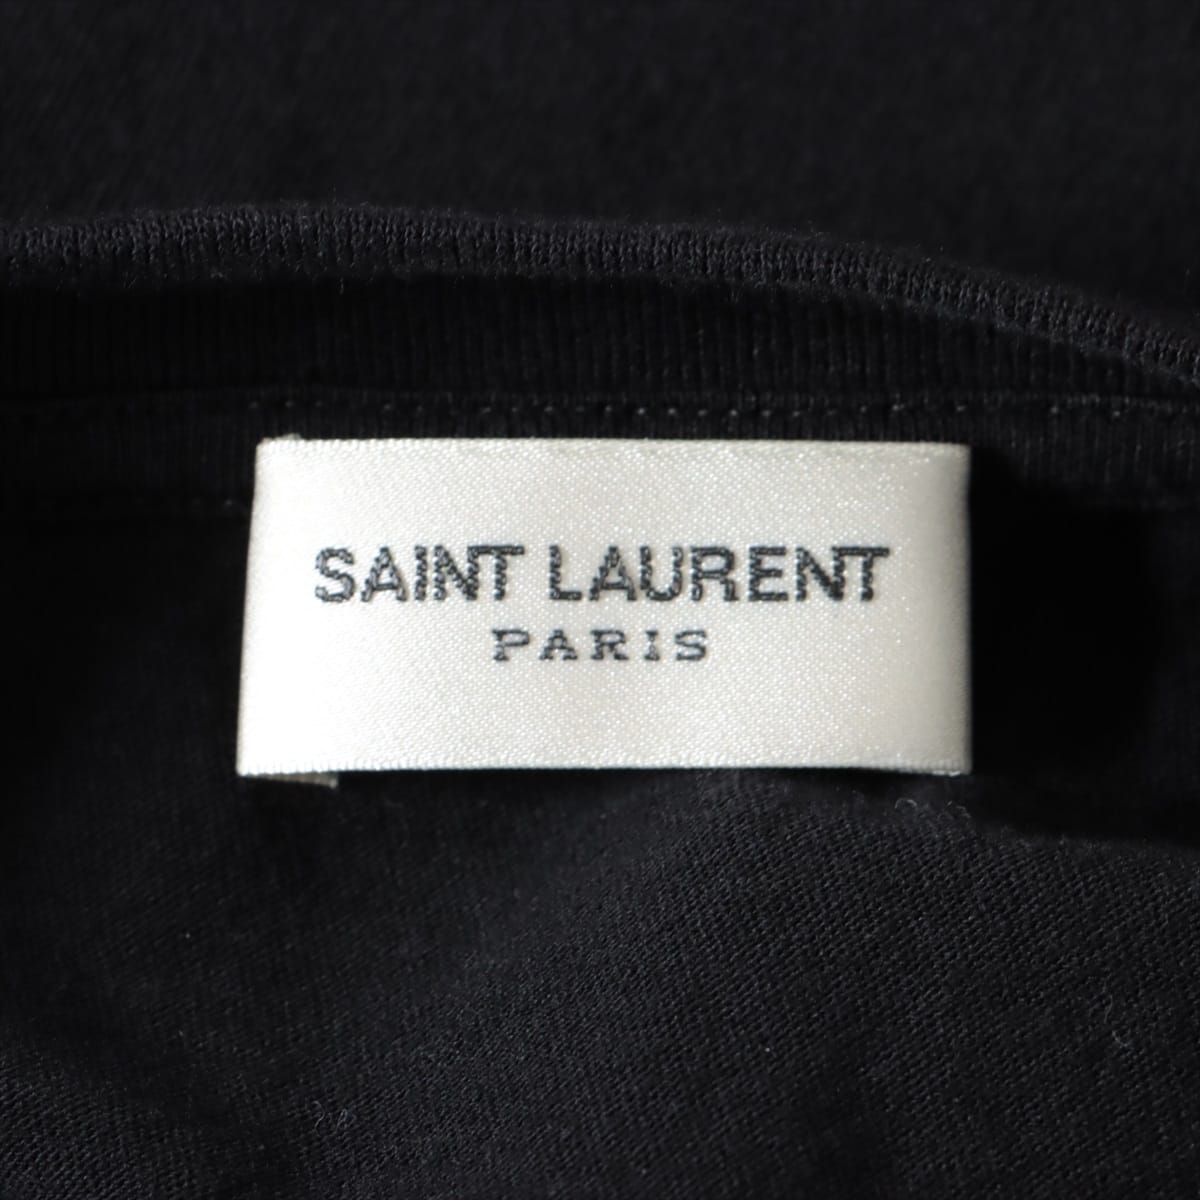 Saint Laurent Paris 18 years Cotton T-shirt S Men's Black  530209